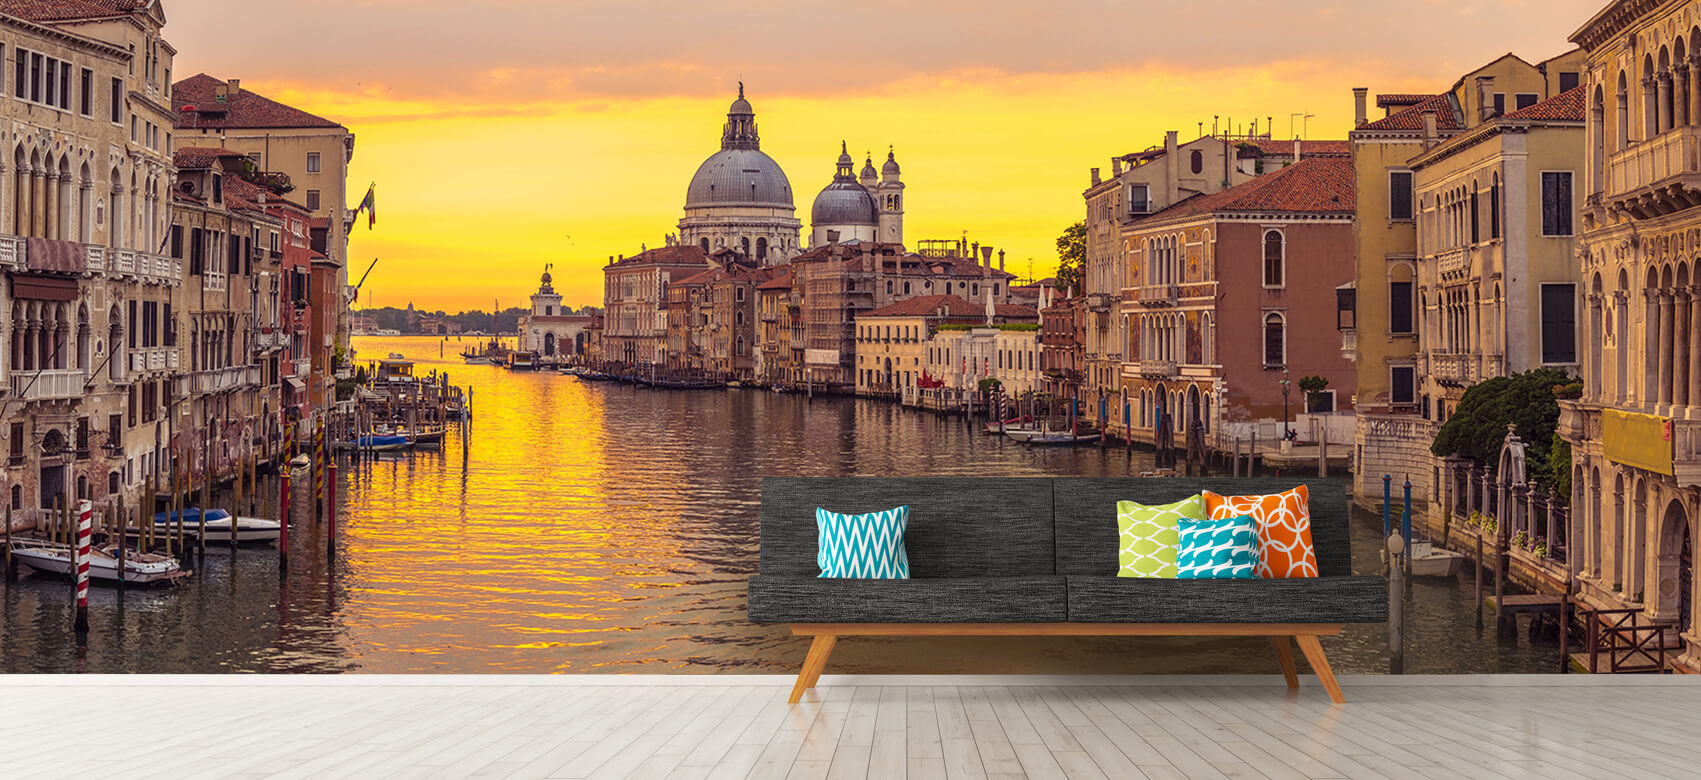 Ciudades - Papel pintado con Canal en Venecia - Salón 12